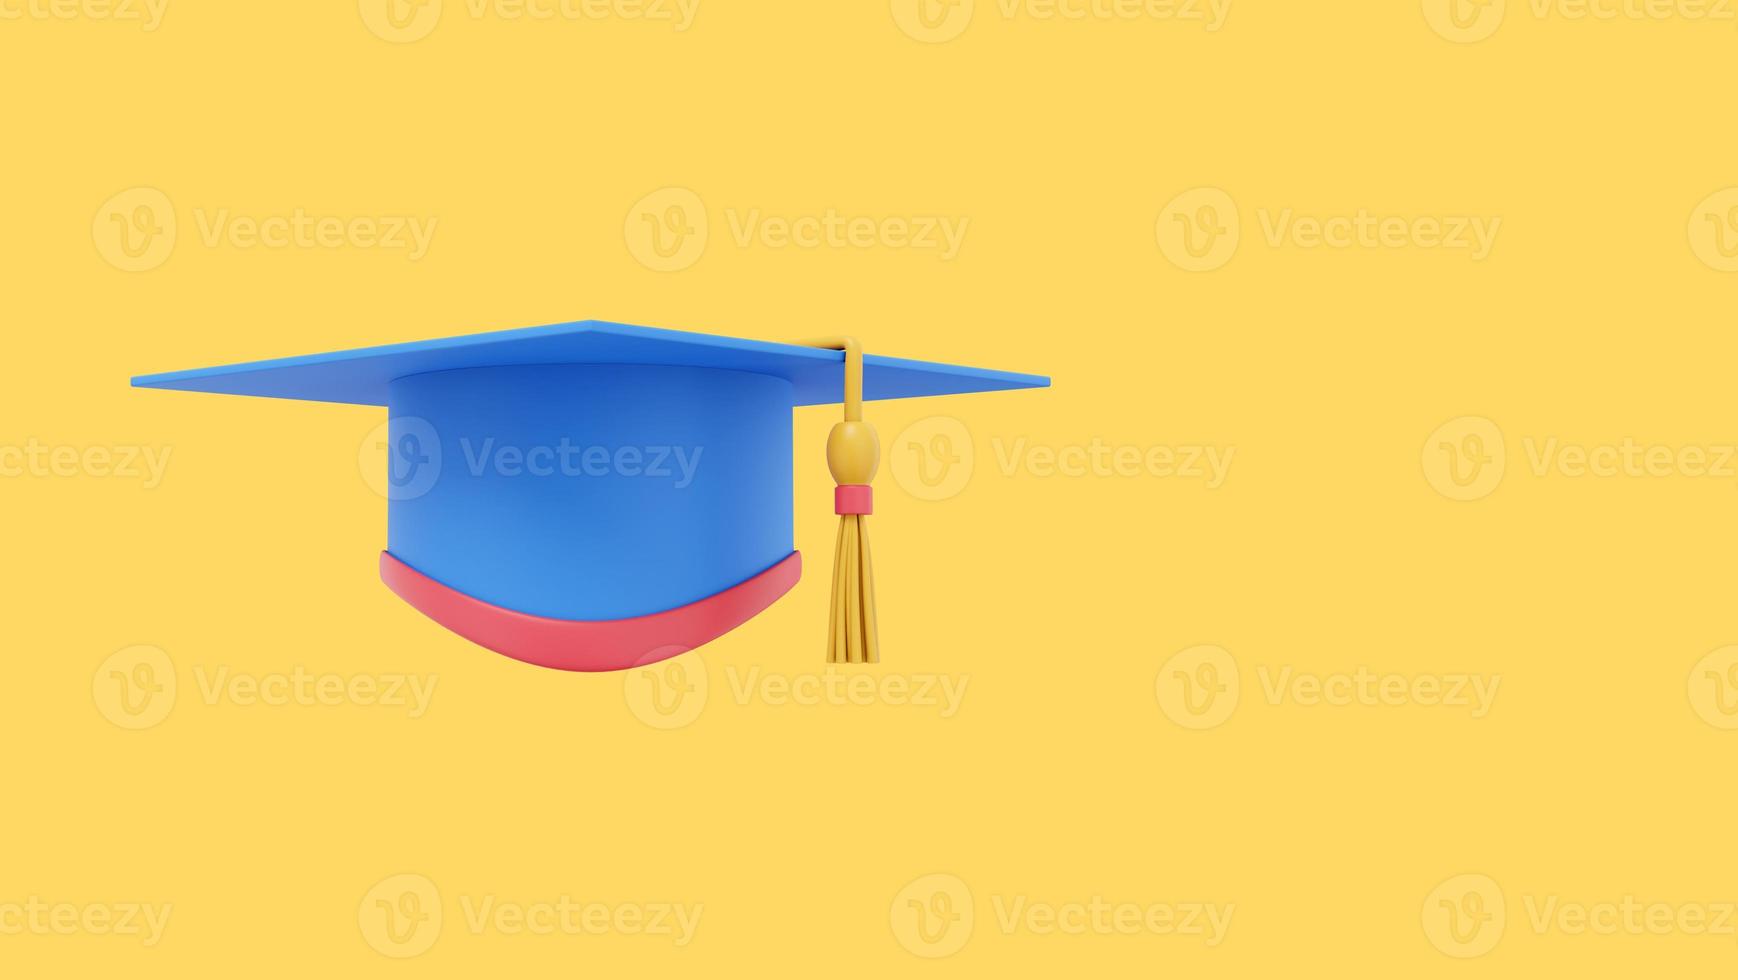 Absolventenkappe. Doktorhut für einen Studenten an einer Universität, Schule, Hochschule. 3D-Rendering. Mehrfarbiges Symbol auf farbigem Hintergrund mit Platz für Text. foto